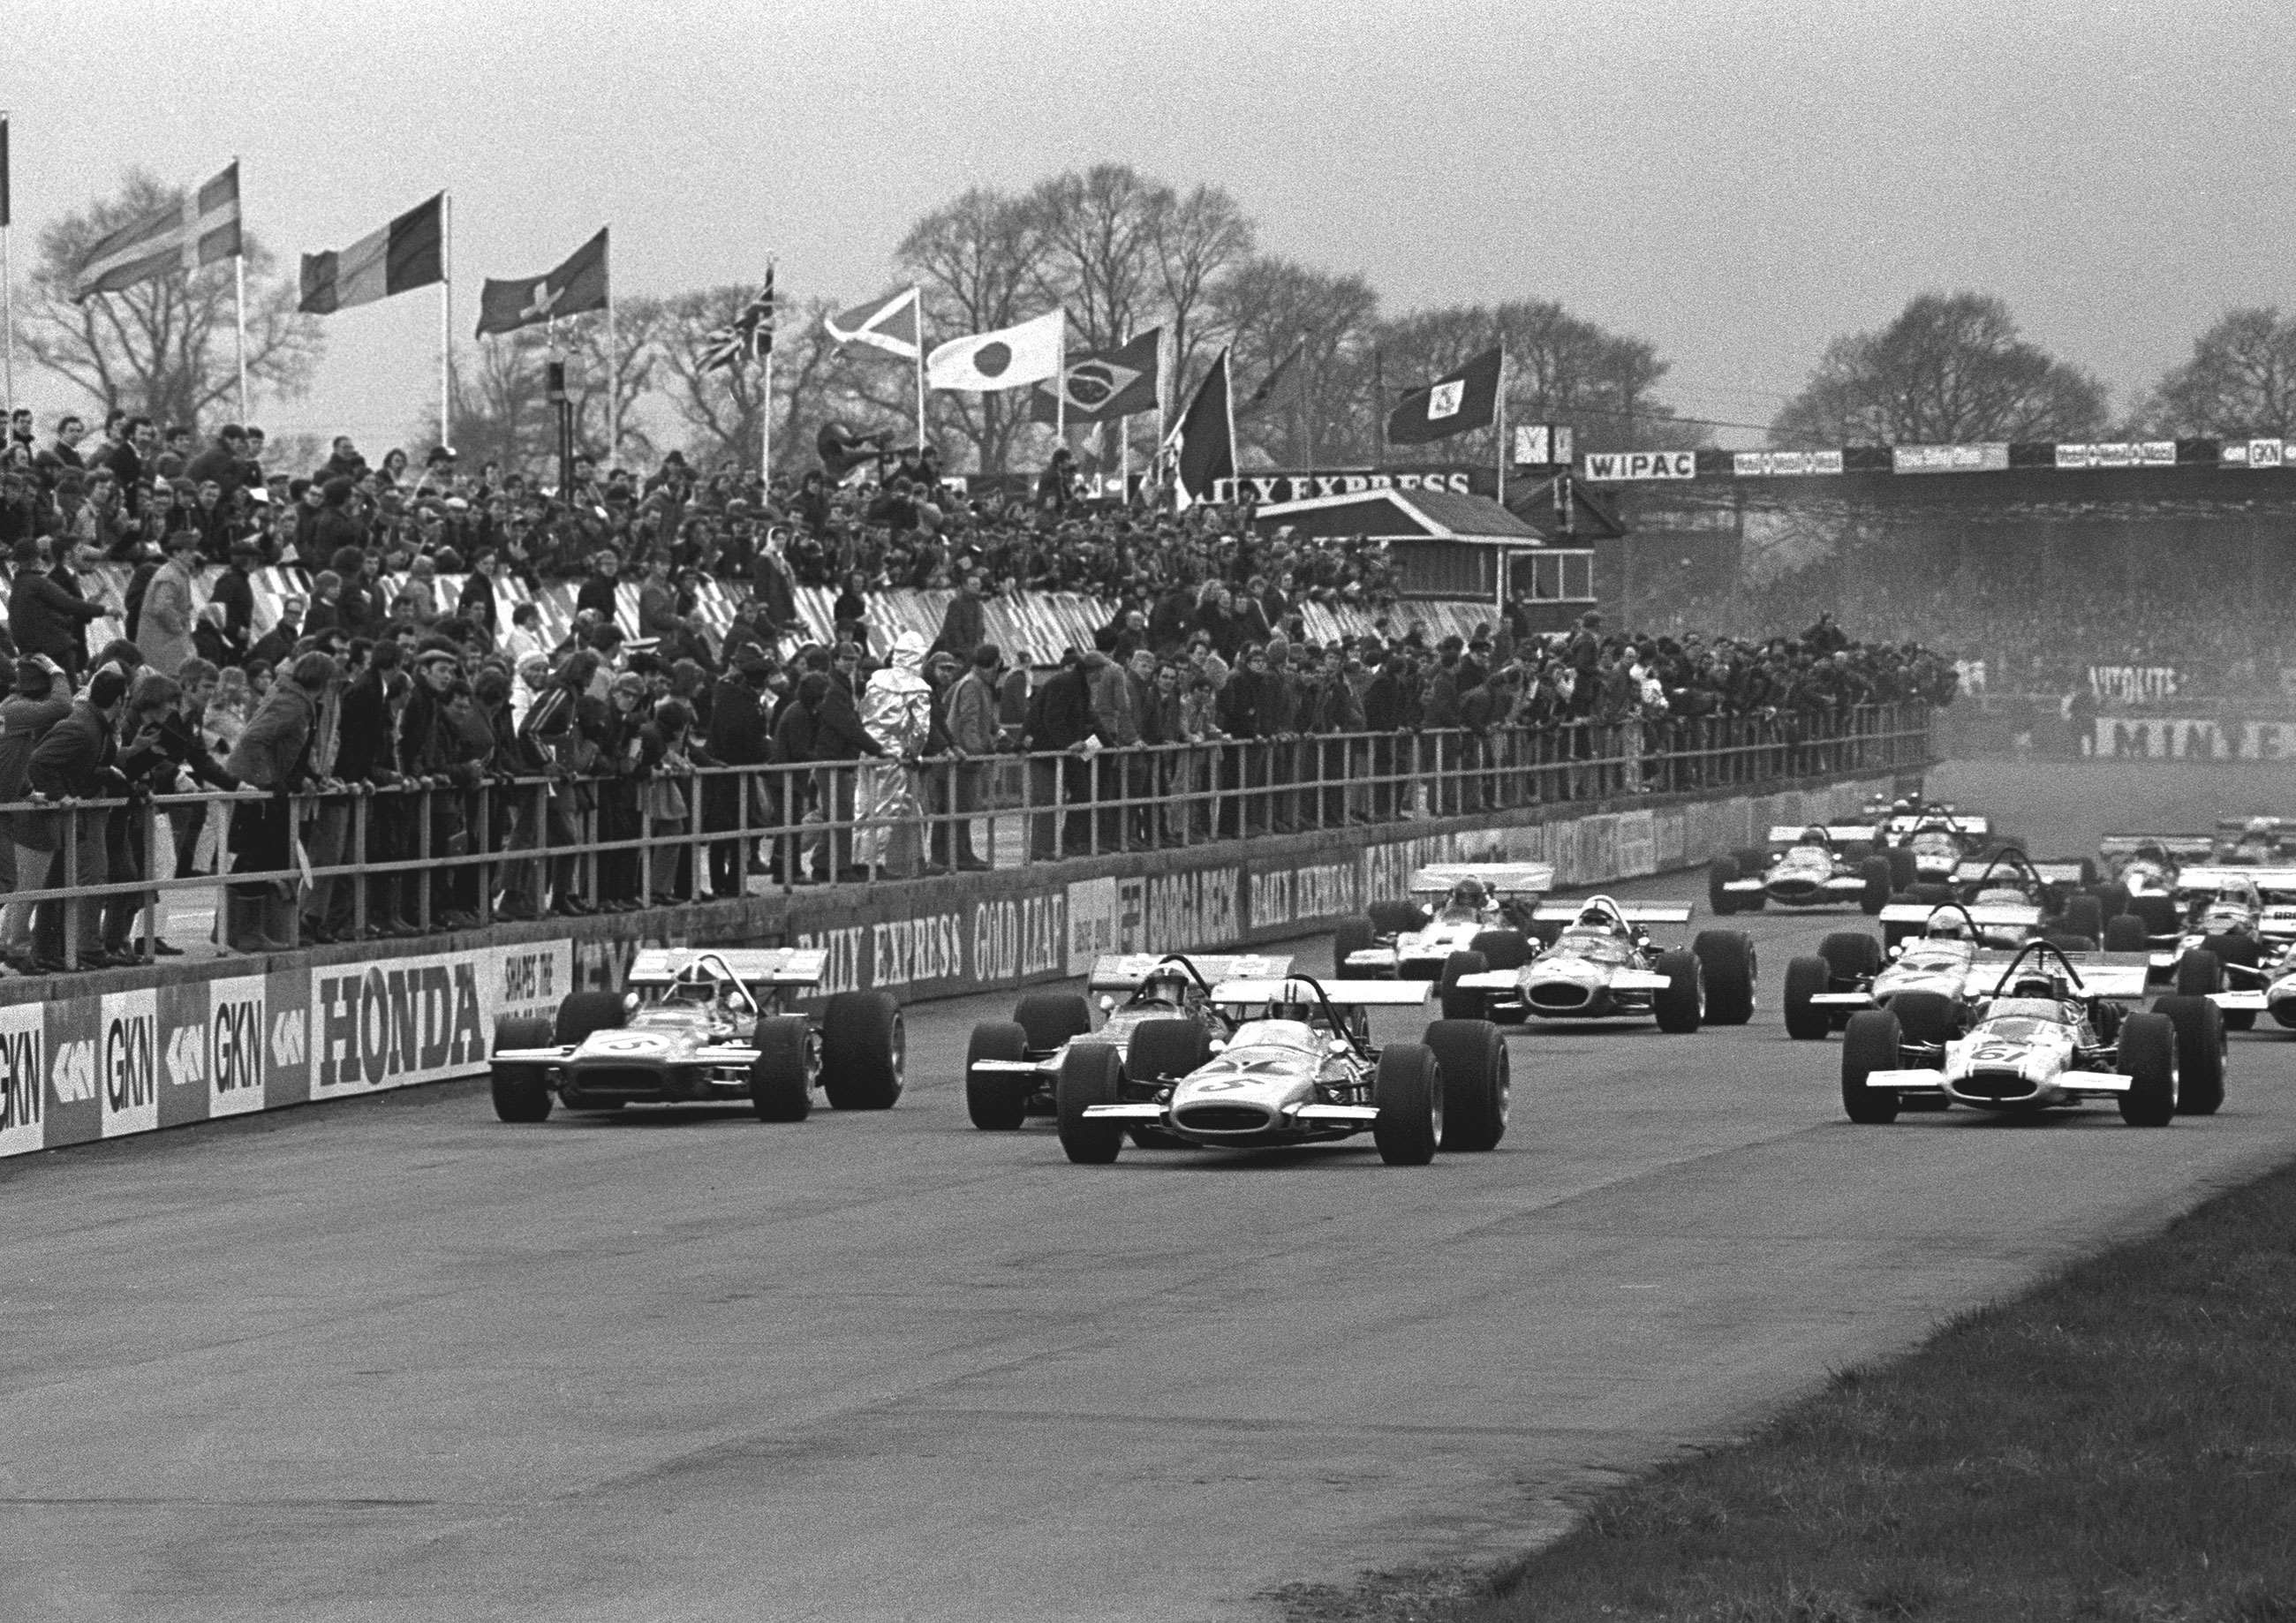 grr-test-1-f1-1970-brdc-international-trophy-silverstone-david-phipps-motorsport-images-goodwood-20042020.jpg